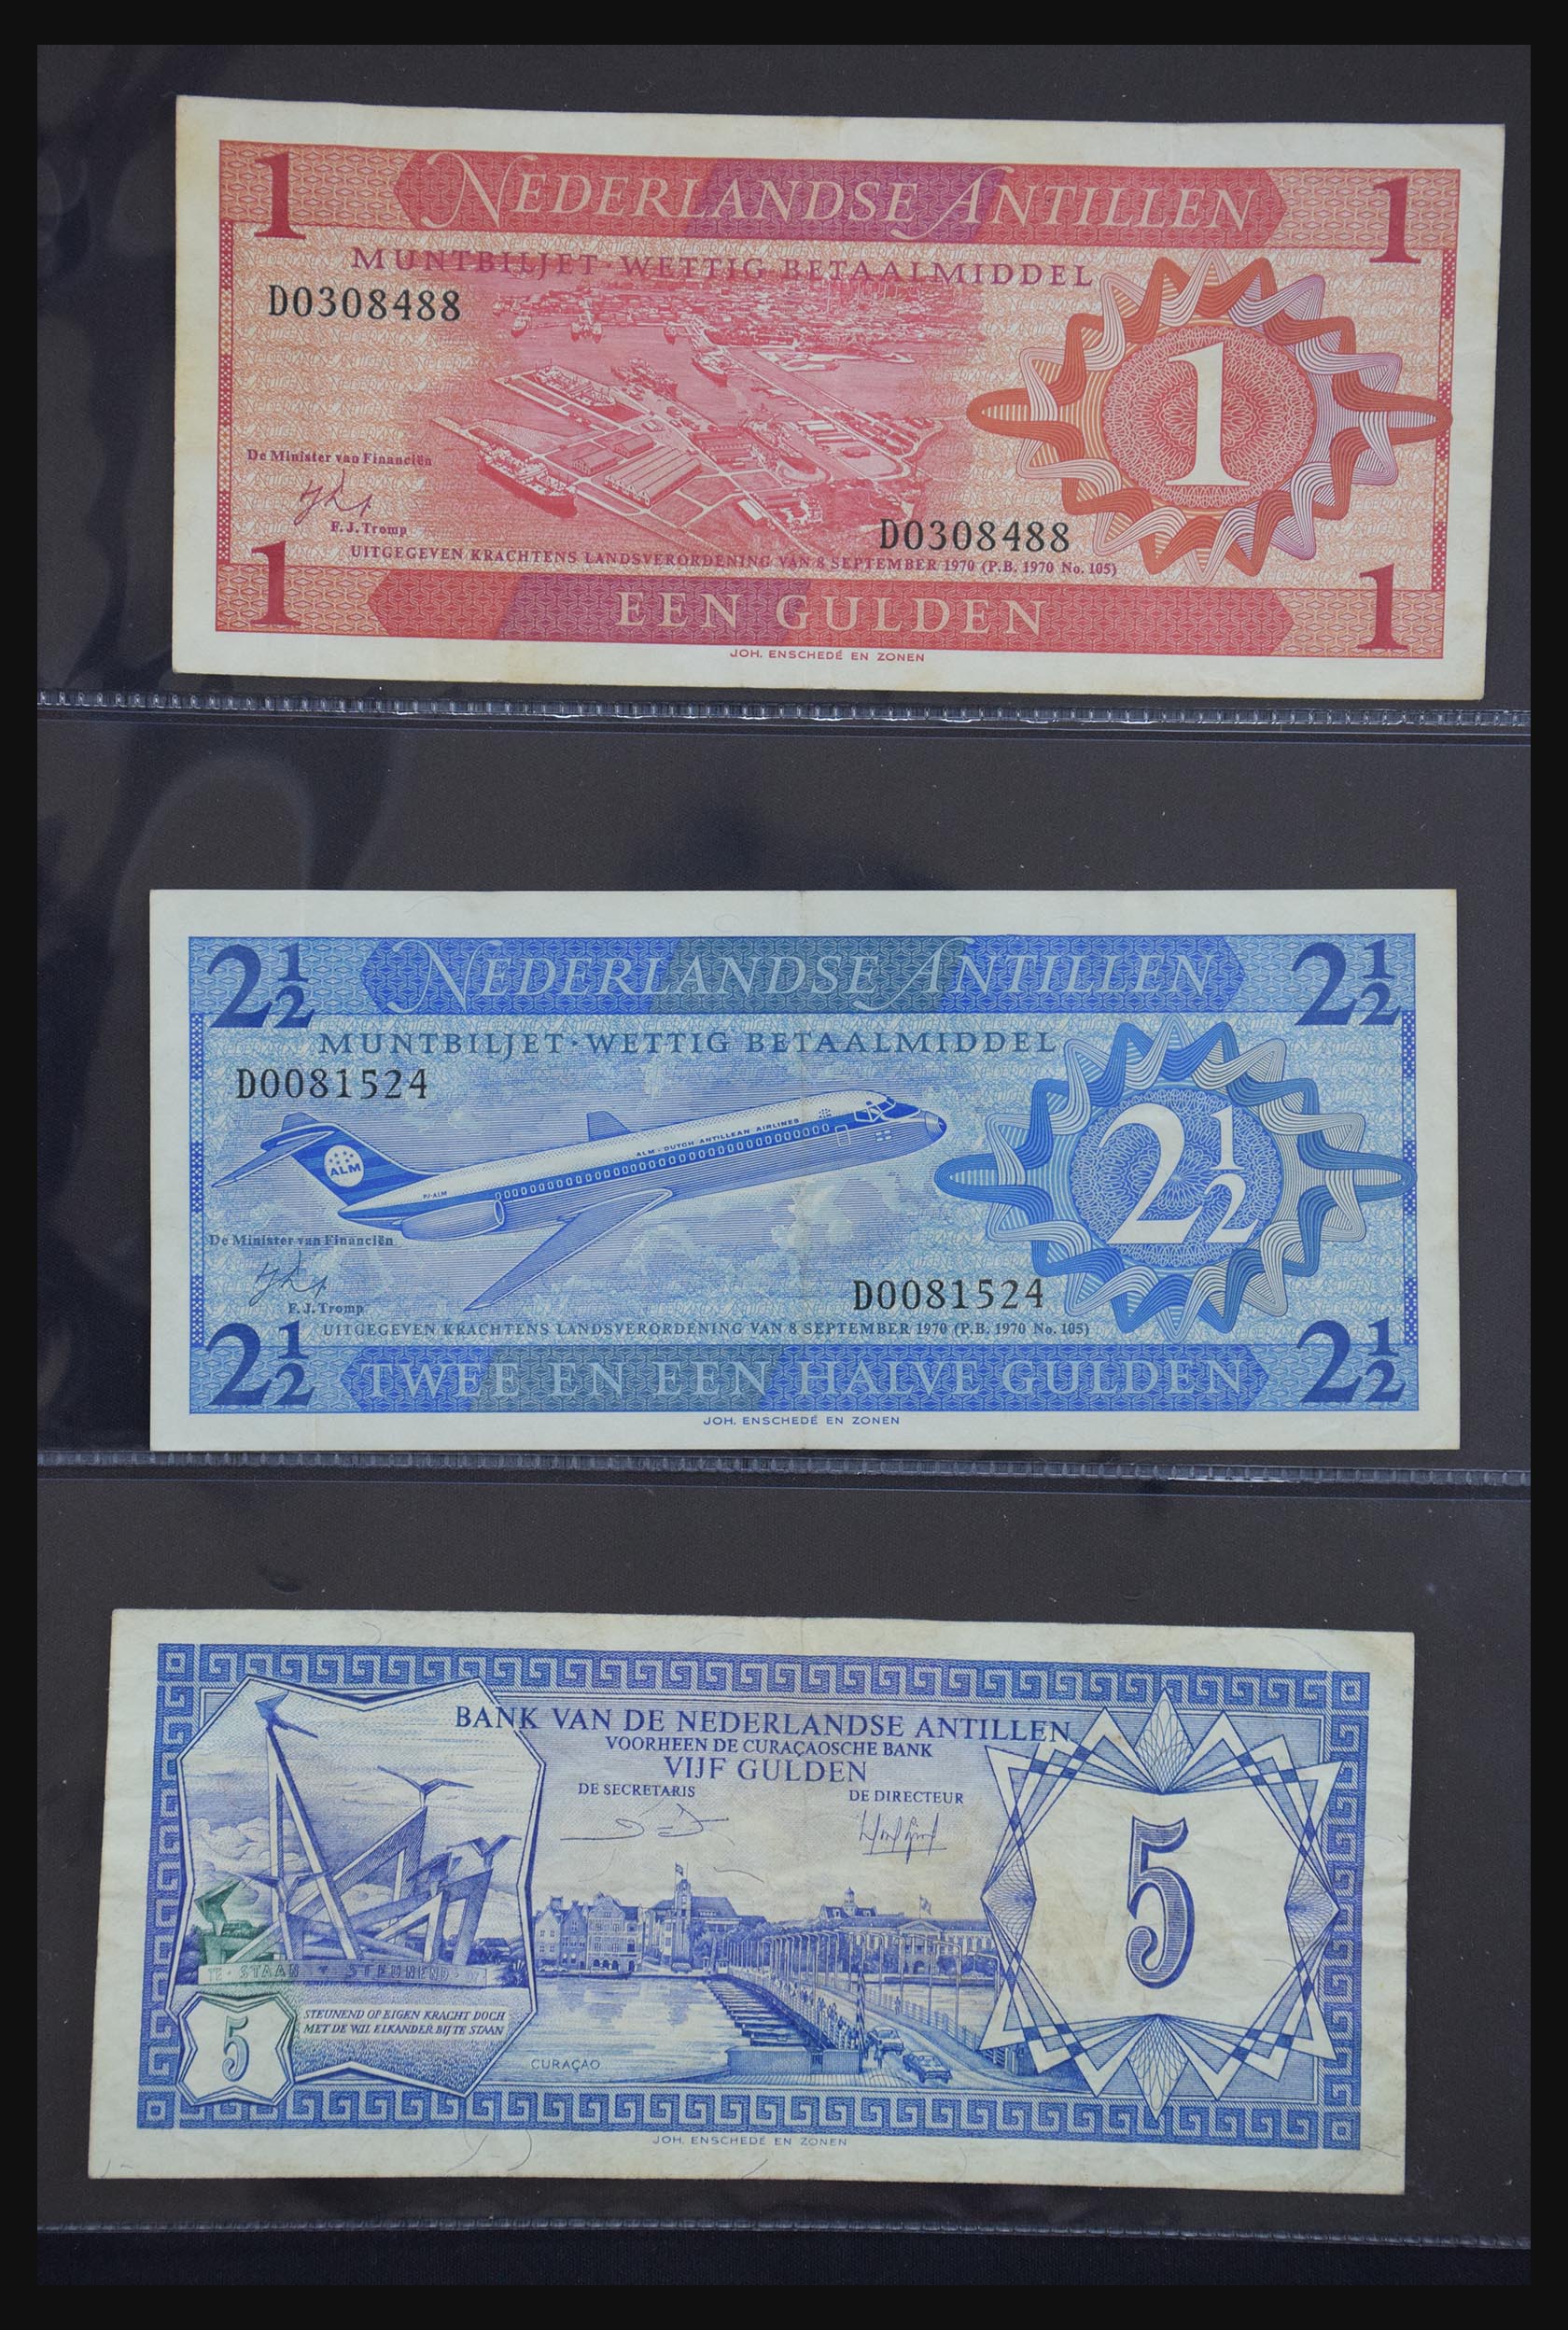 29404 069 - 29404 Netherlands banknotes 1924-1997.